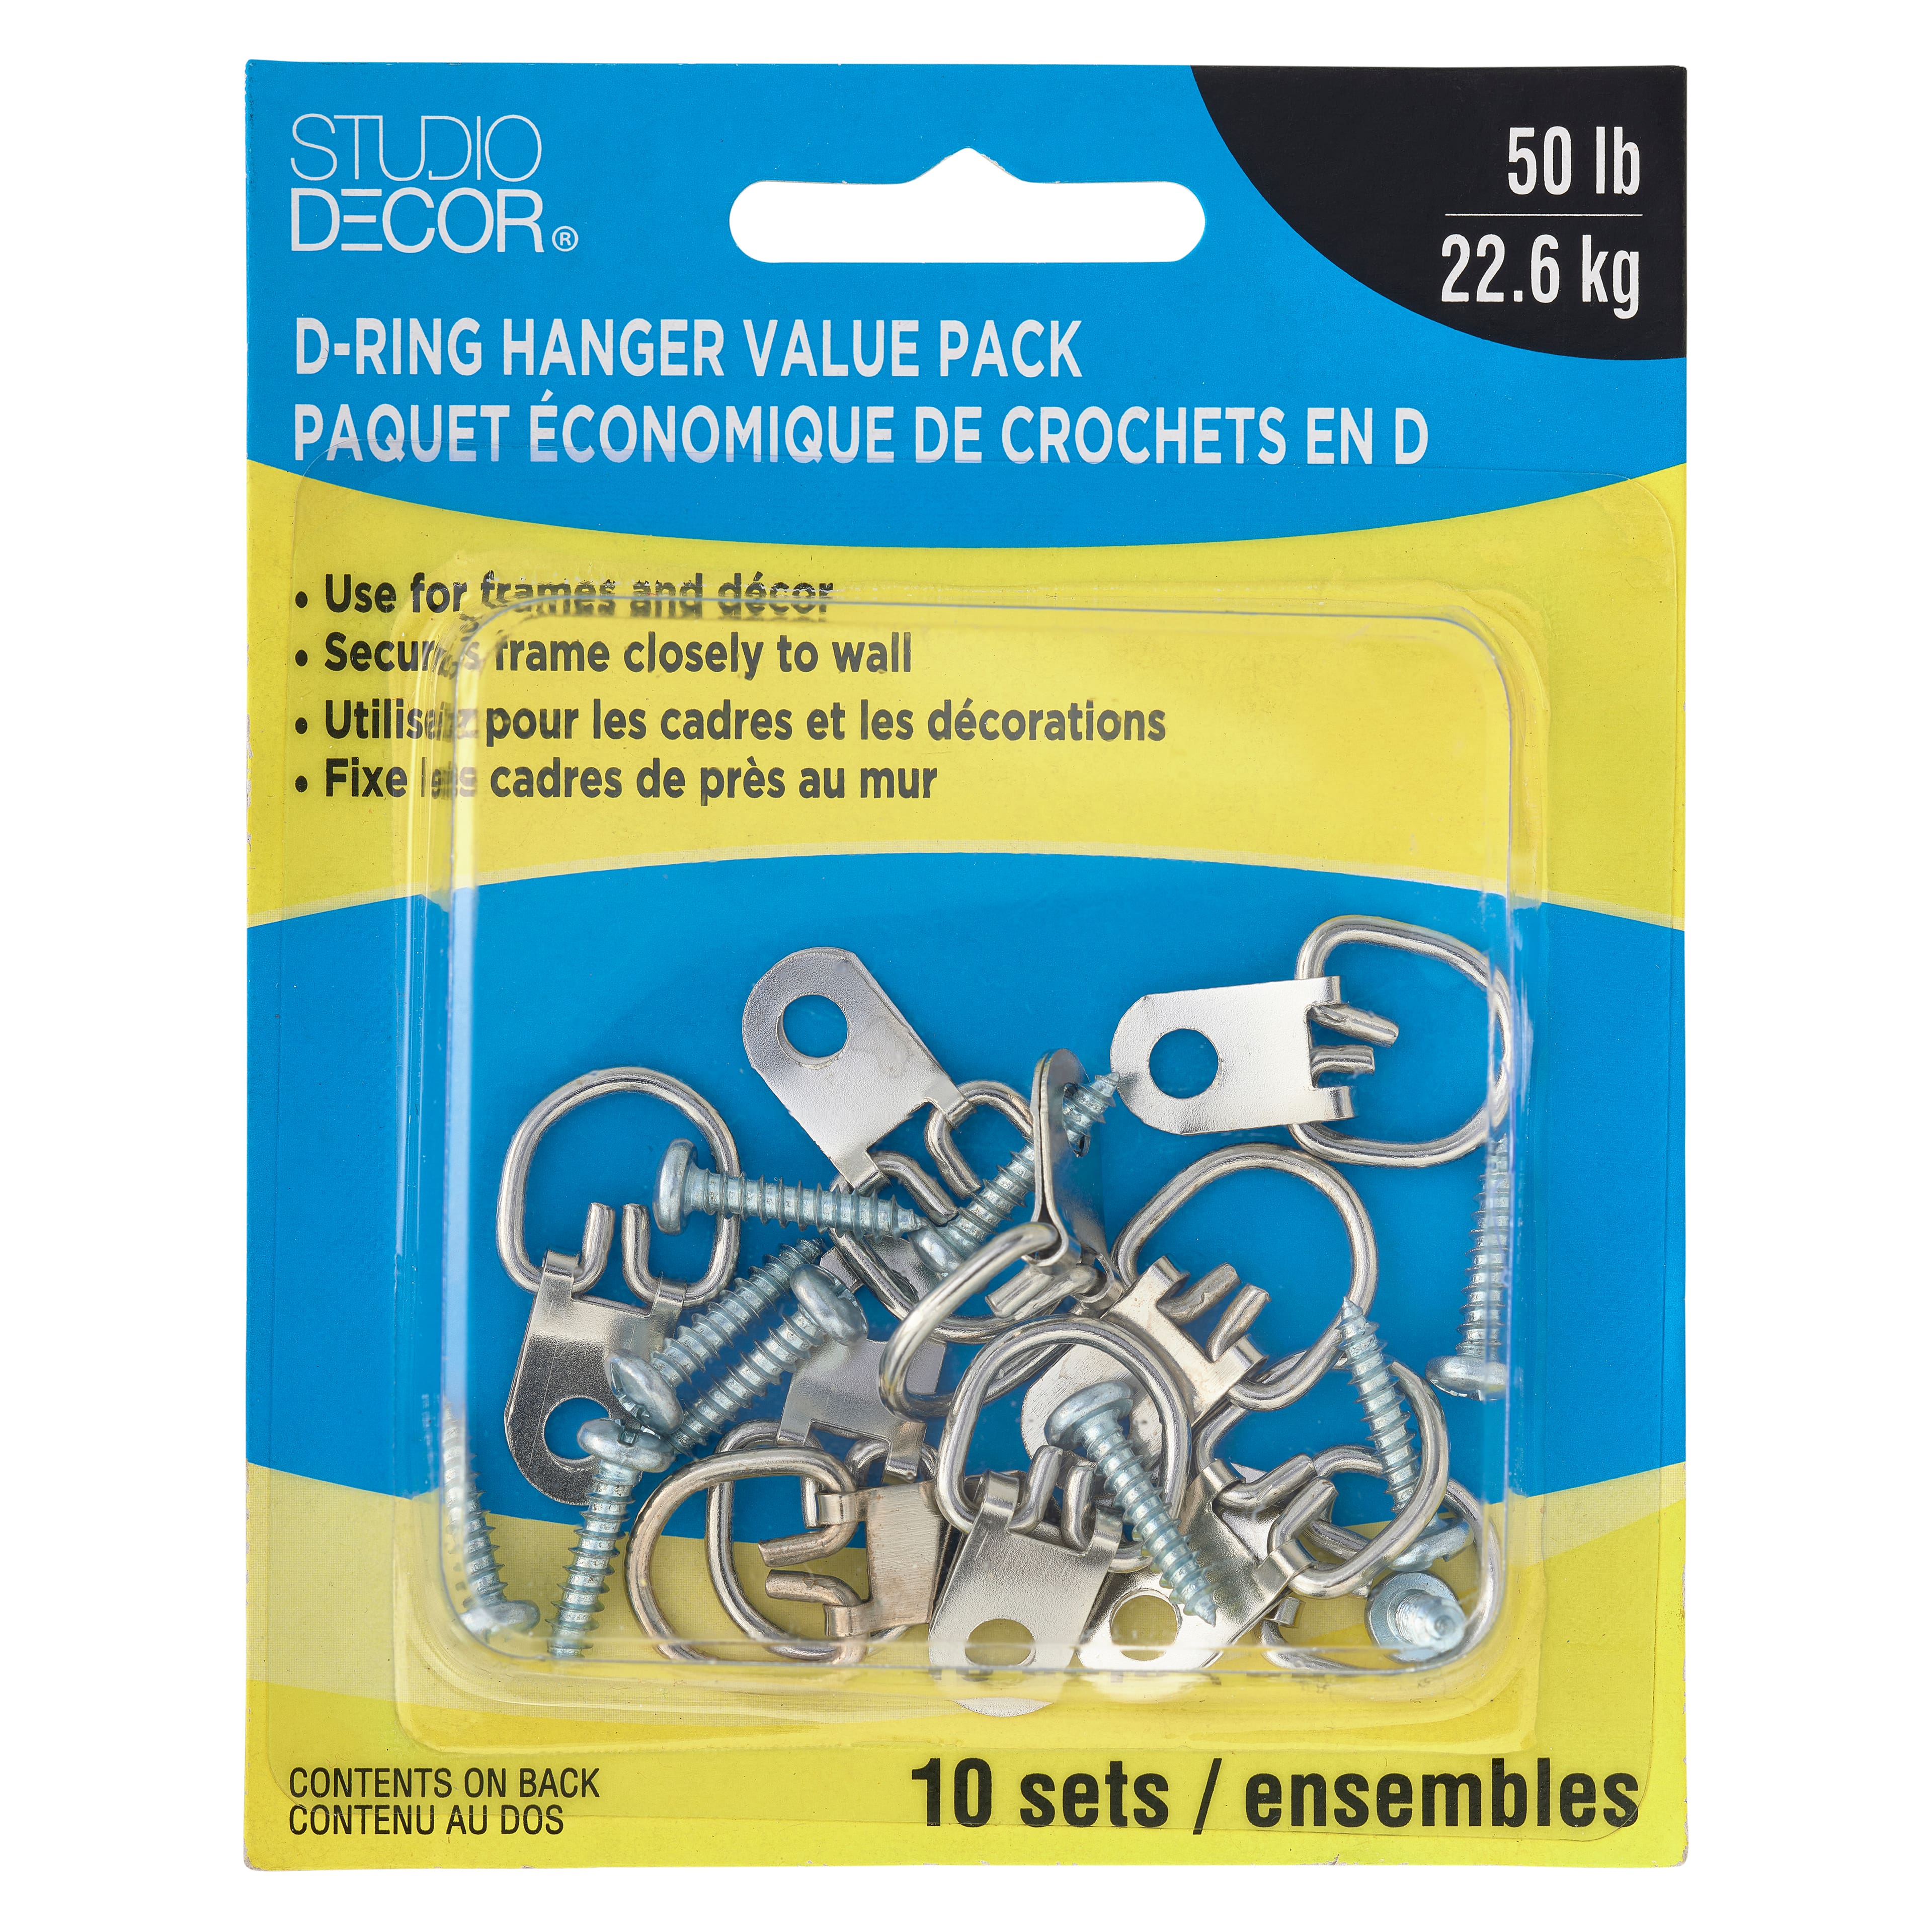 D-Ring Hanger Value Pack by Studio D&#xE9;cor&#xAE;